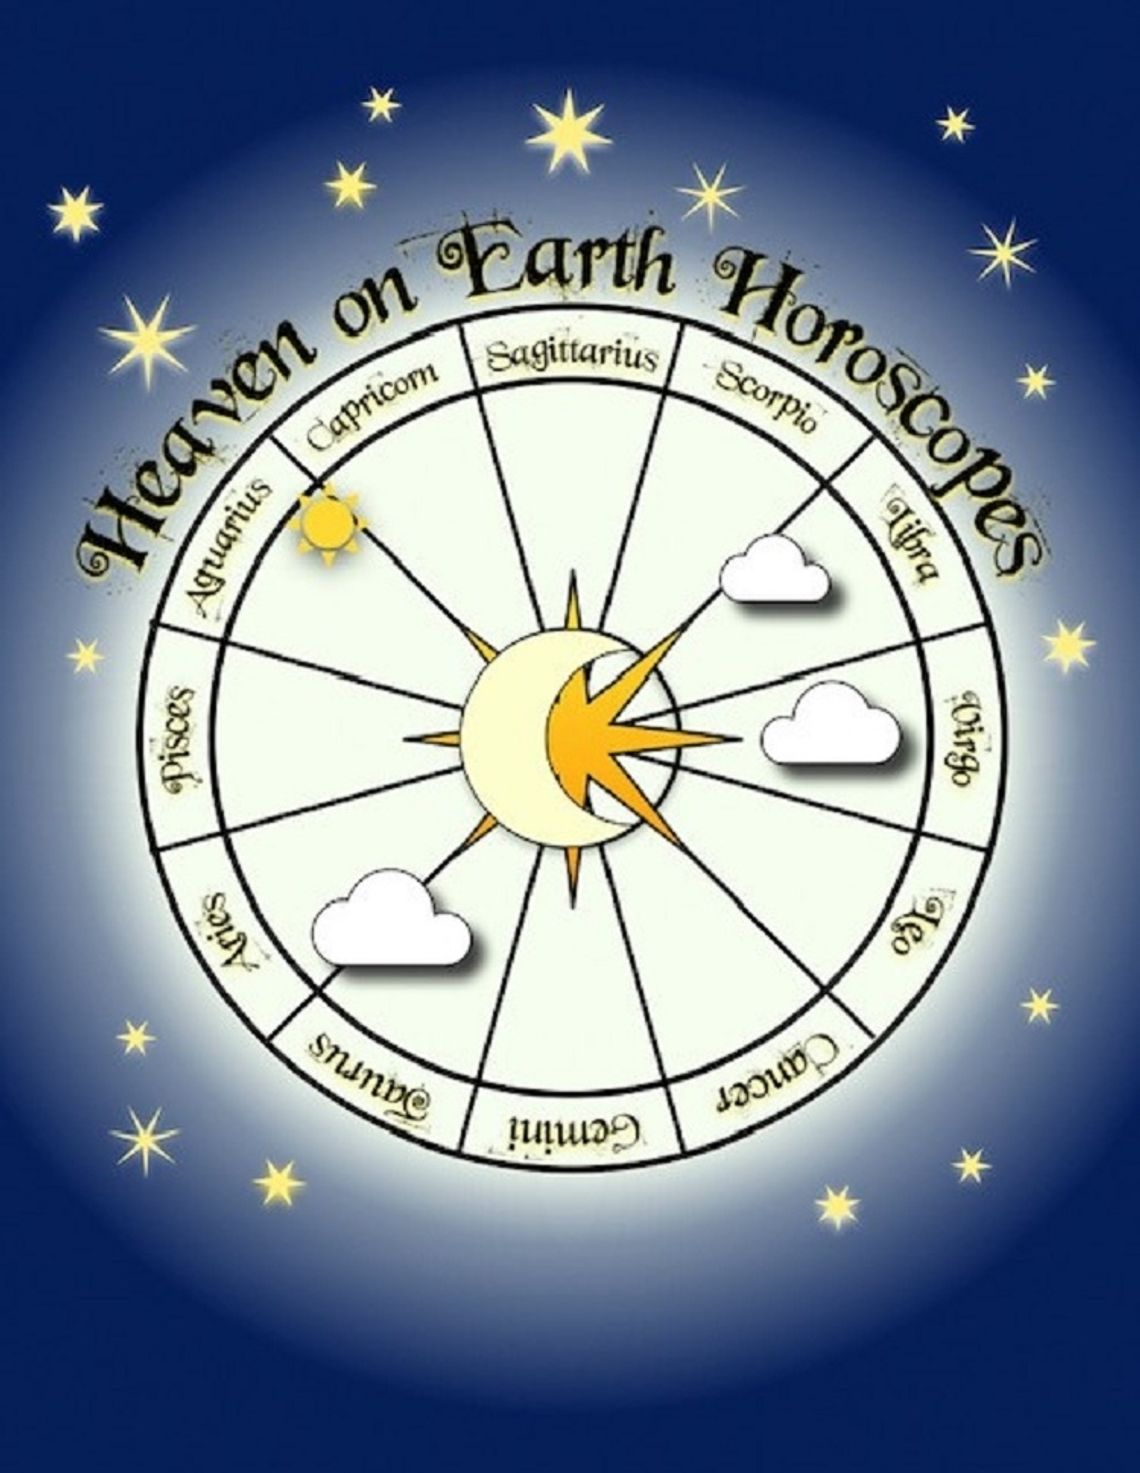 Heaven on Earth Horoscopes: January 27 - February 2